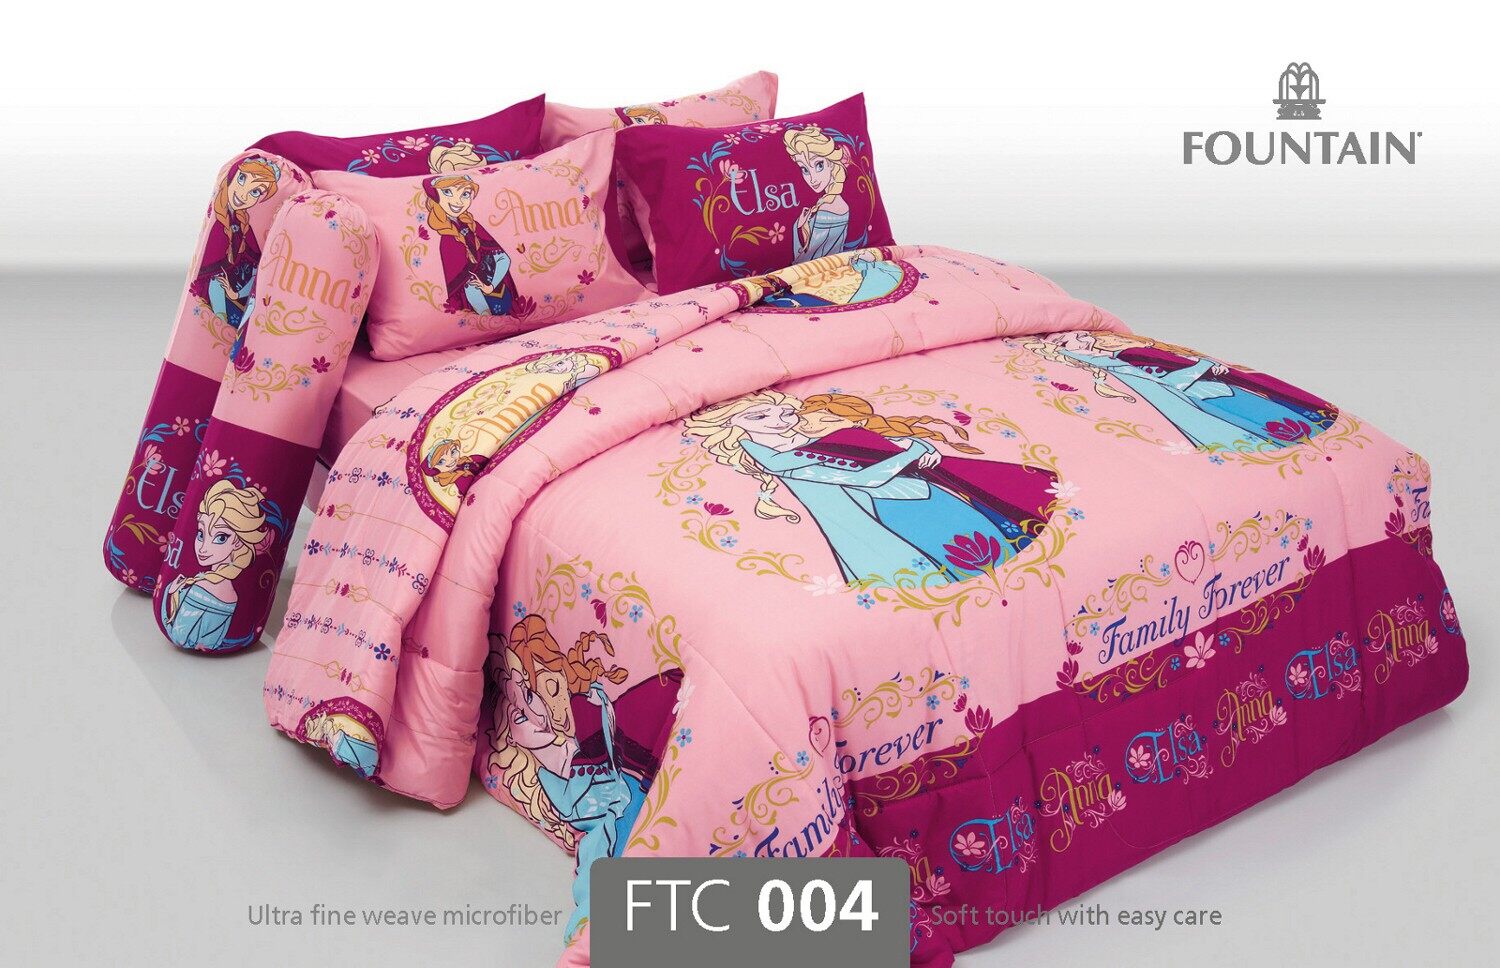 FOUNTAIN ชุดผ้าปู / นวม FTC 004 ลายการ์ตูน FROZEN Bed Setผ้าปู ผ้านวม 3.5 5 6 ฟุต wonderful bedding bed ชุดผ้าปู ชุดที่นอน ชุดเครื่องนอน ชุดผ้านวม FTC ครบชุด